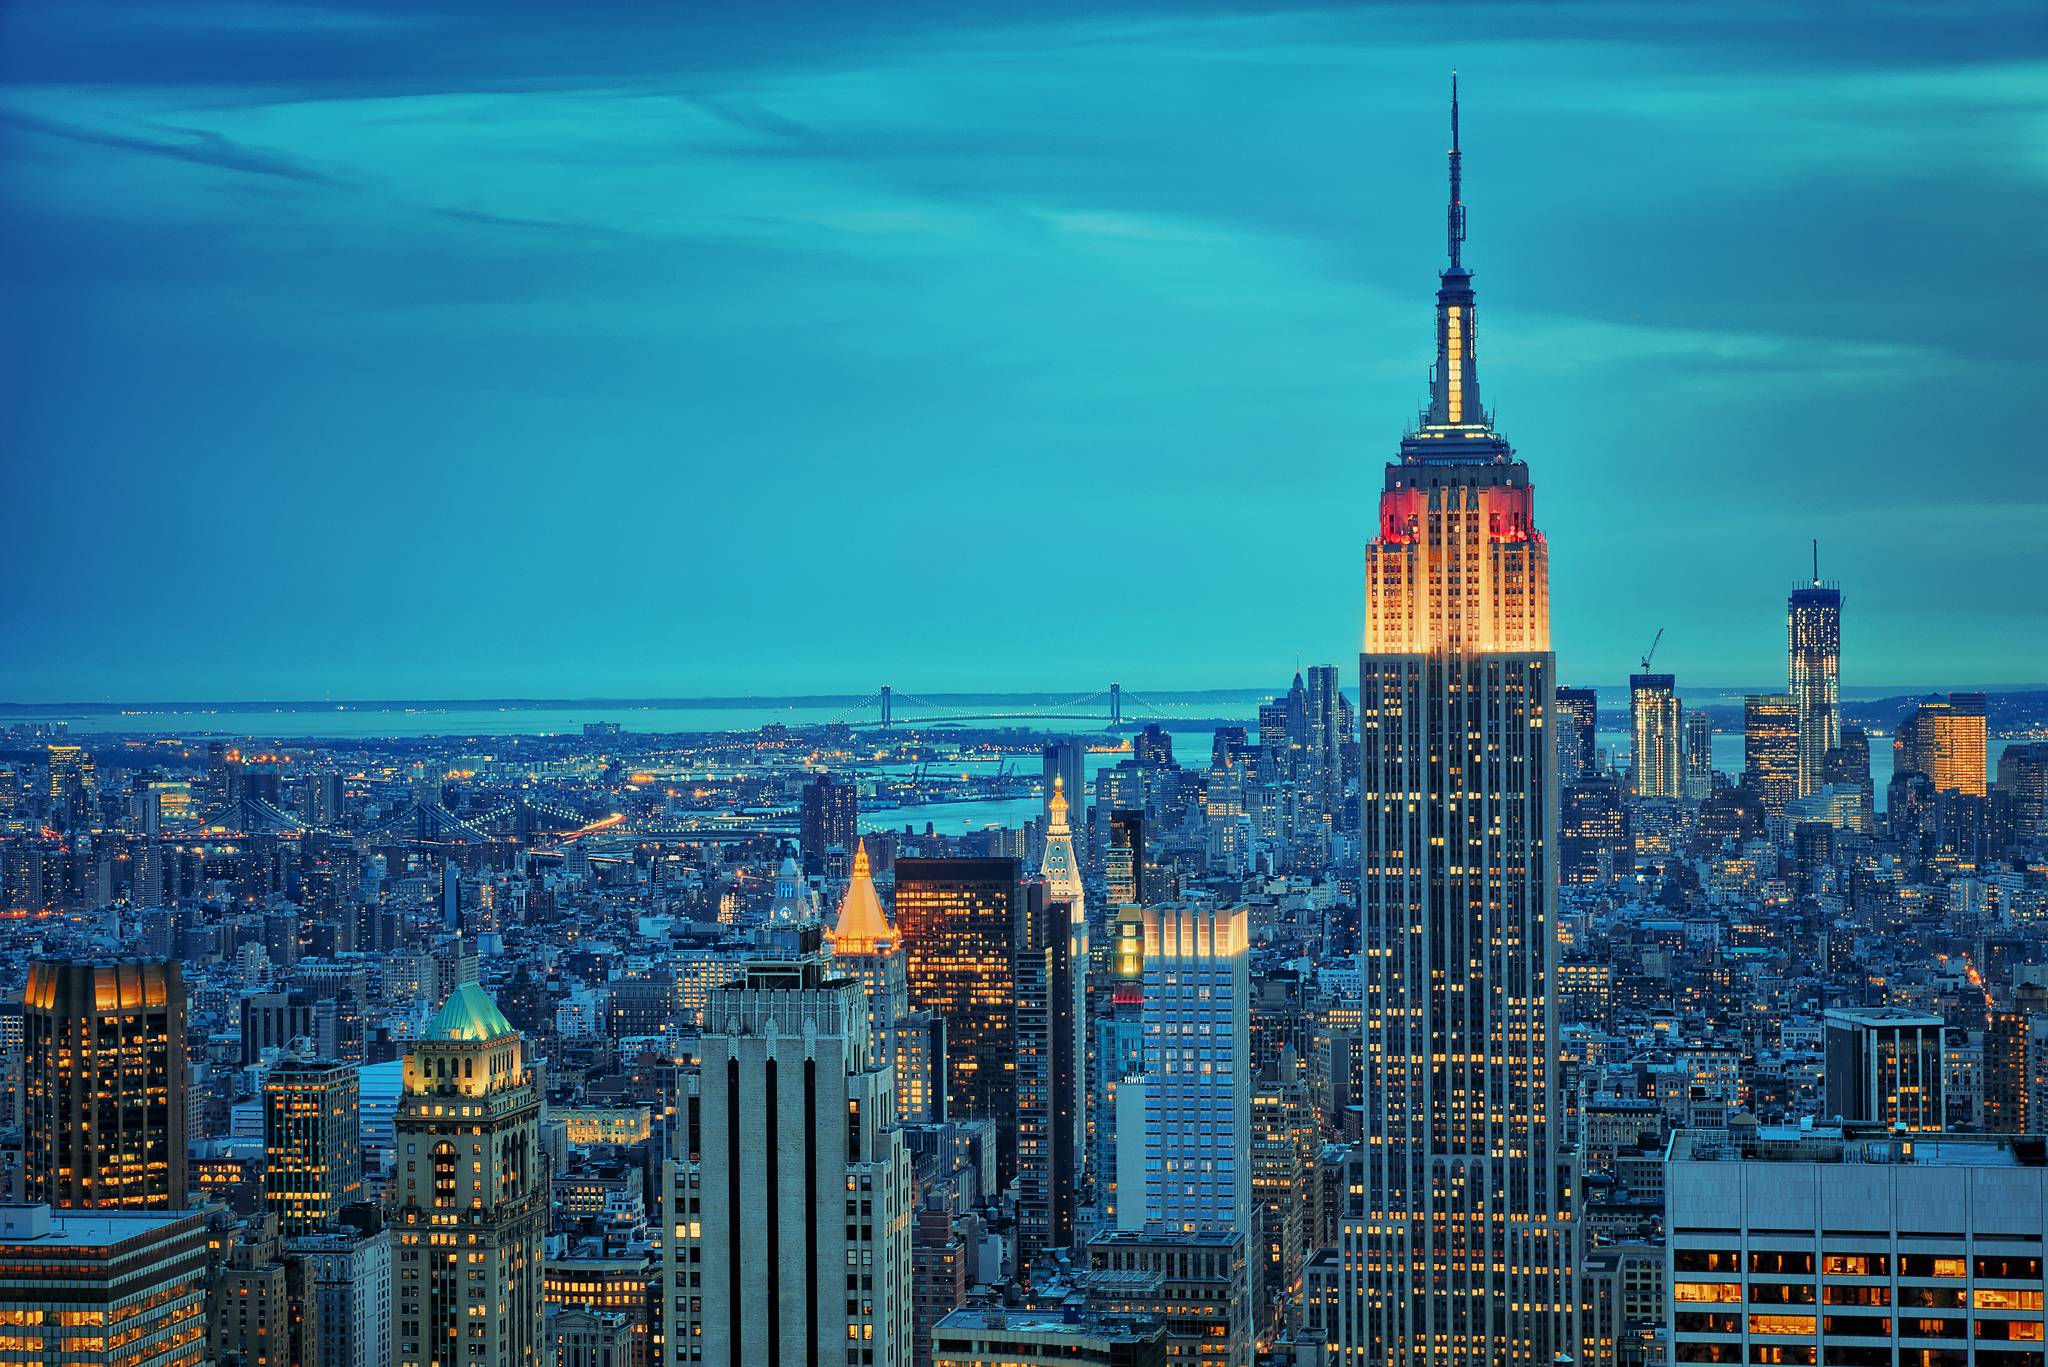 Sức hút của hình nền máy tính New York không chỉ nằm ở độ phân giải cao và màu sắc tươi sáng, mà còn ở chất lượng hình ảnh đặc trưng của thành phố này. Nhìn vào hình nền, bạn sẽ cảm nhận được sự sống động của những phong cảnh và địa điểm tuyệt đẹp nhất.